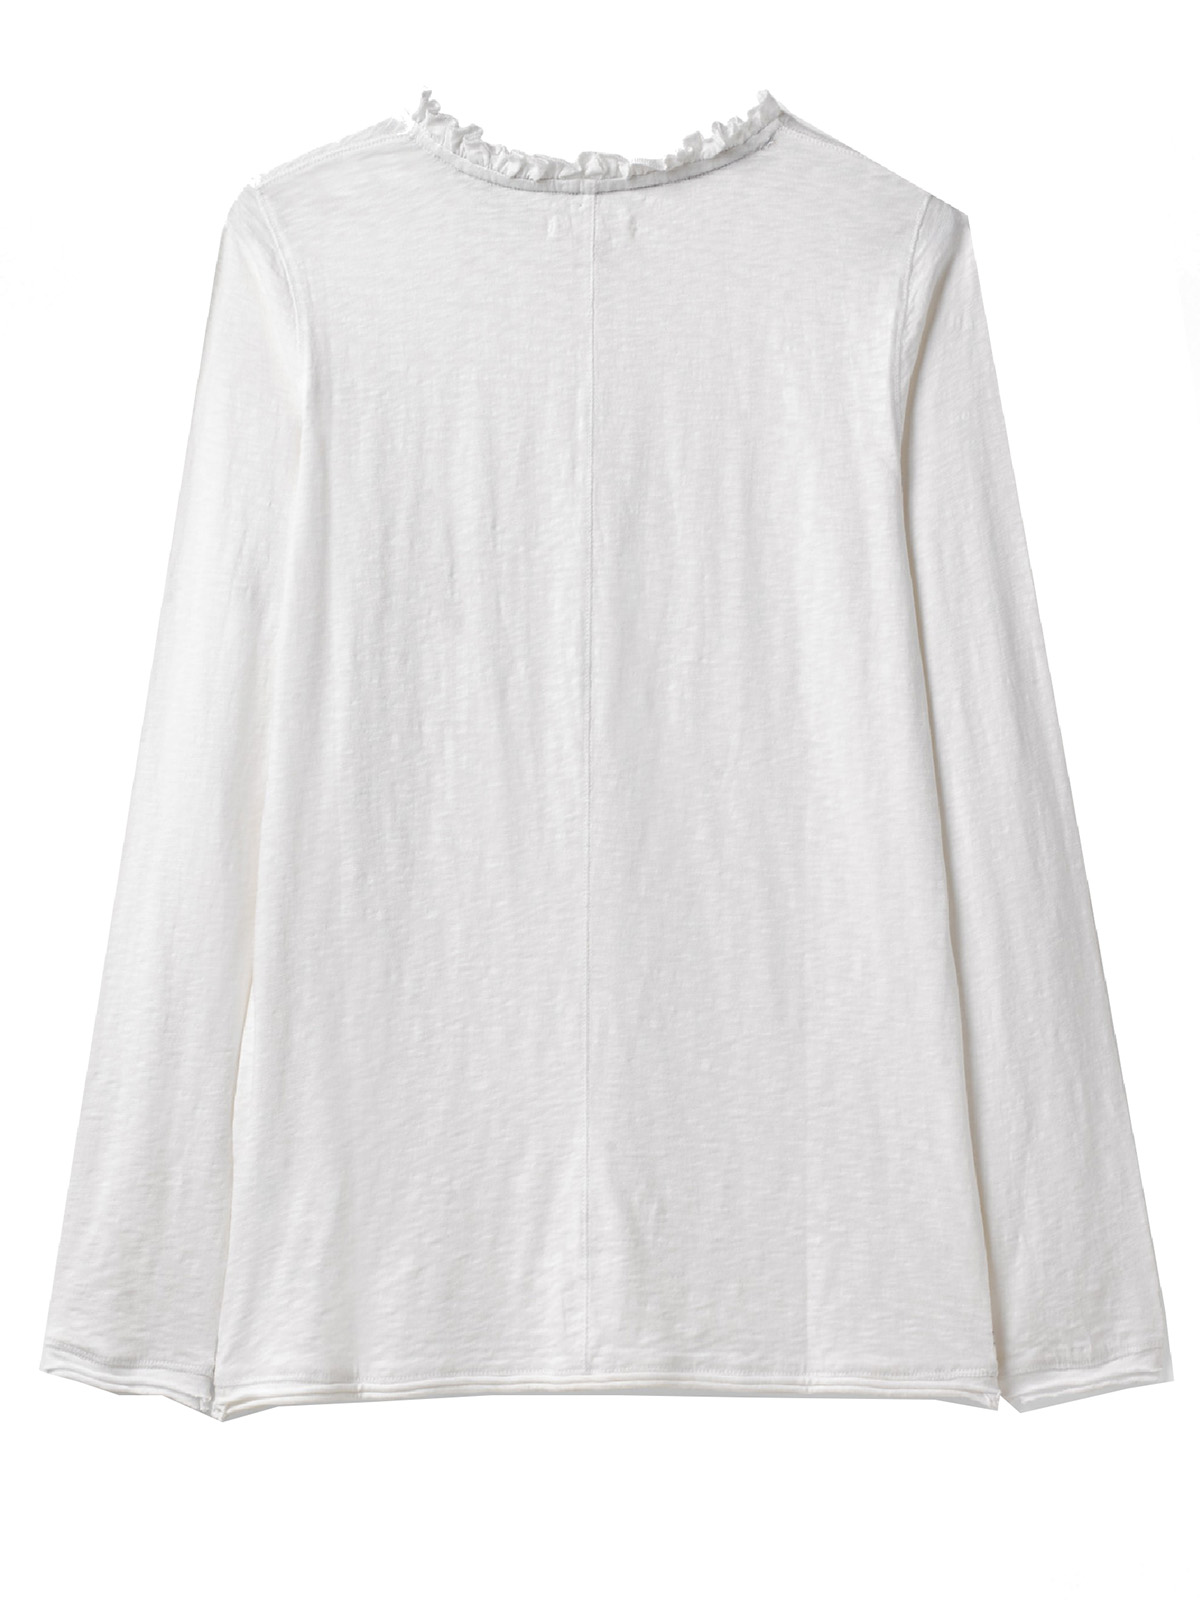 White Stuff - - Wh1te Stuff WHITE Effie Slub Jersey Tee - Size 14 to 20